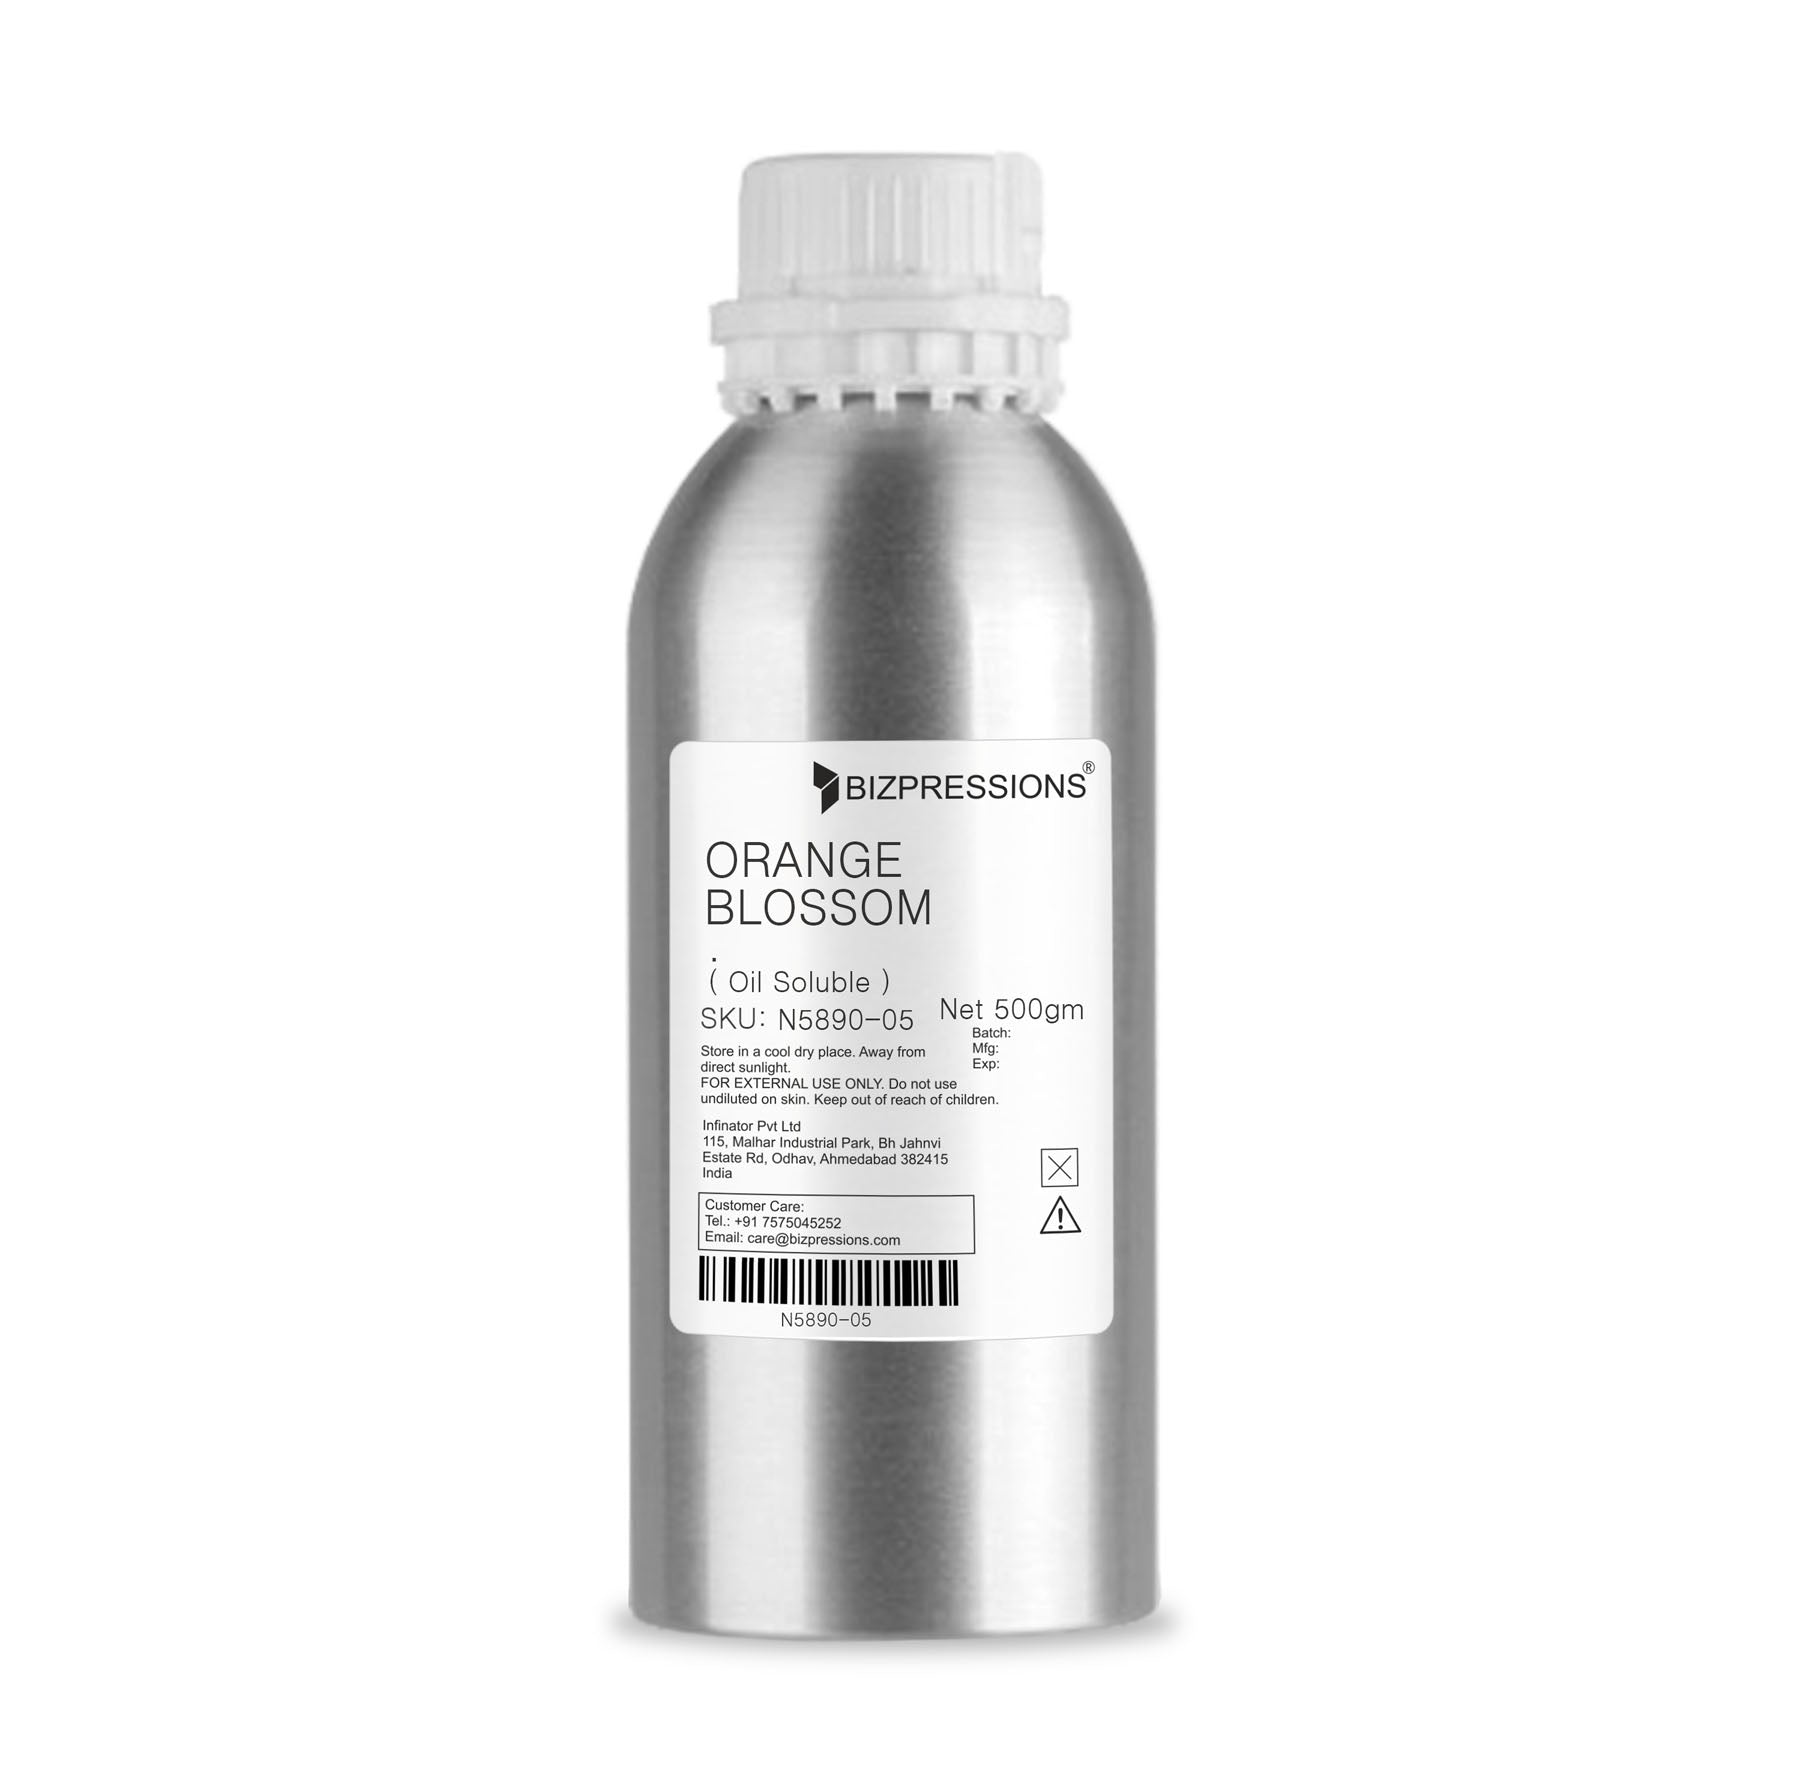 ORANGE BLOSSOM - Fragrance ( Oil Soluble ) - 500 gm